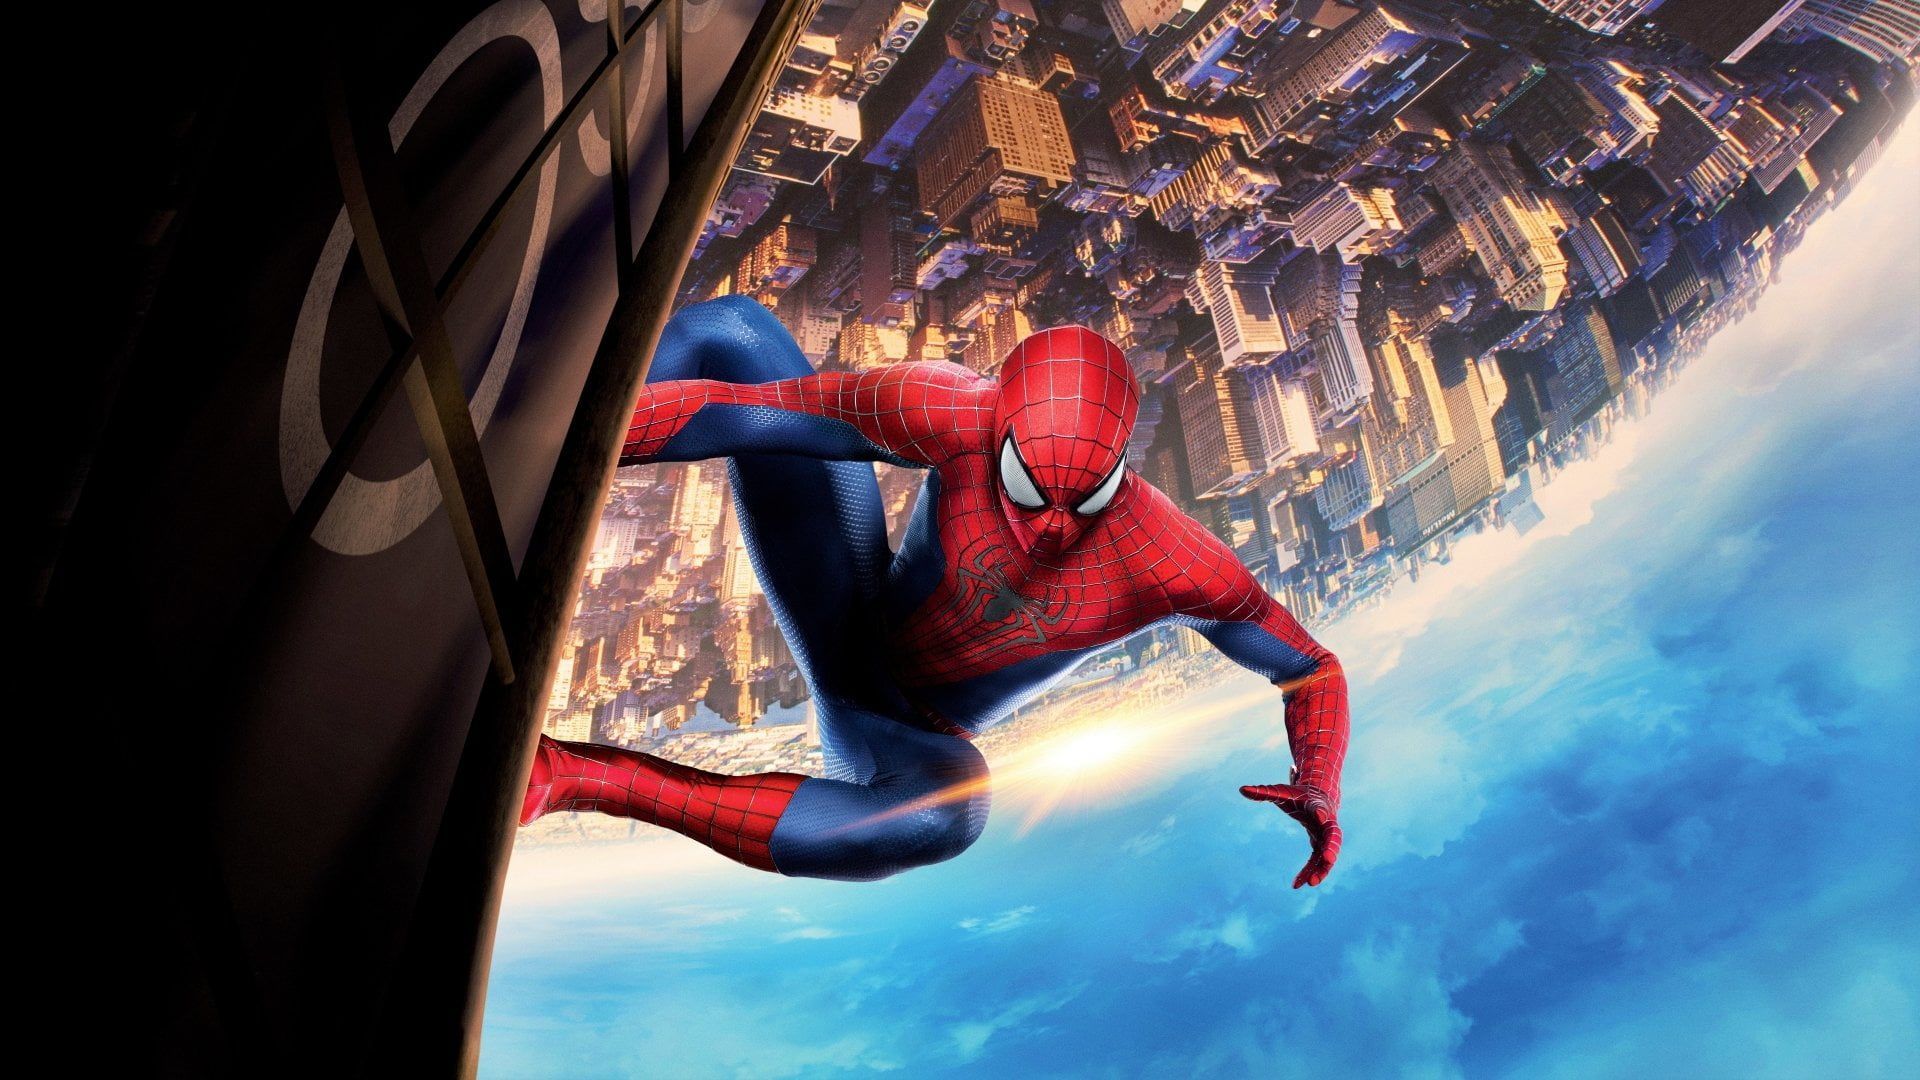 Spider Man The Amazing Spider Man 2 #Building #Movie P #wallpaper #hdwallpaper #desktop. Spider Man, Fondos De Pantalla De Películas, Personajes De Marvel